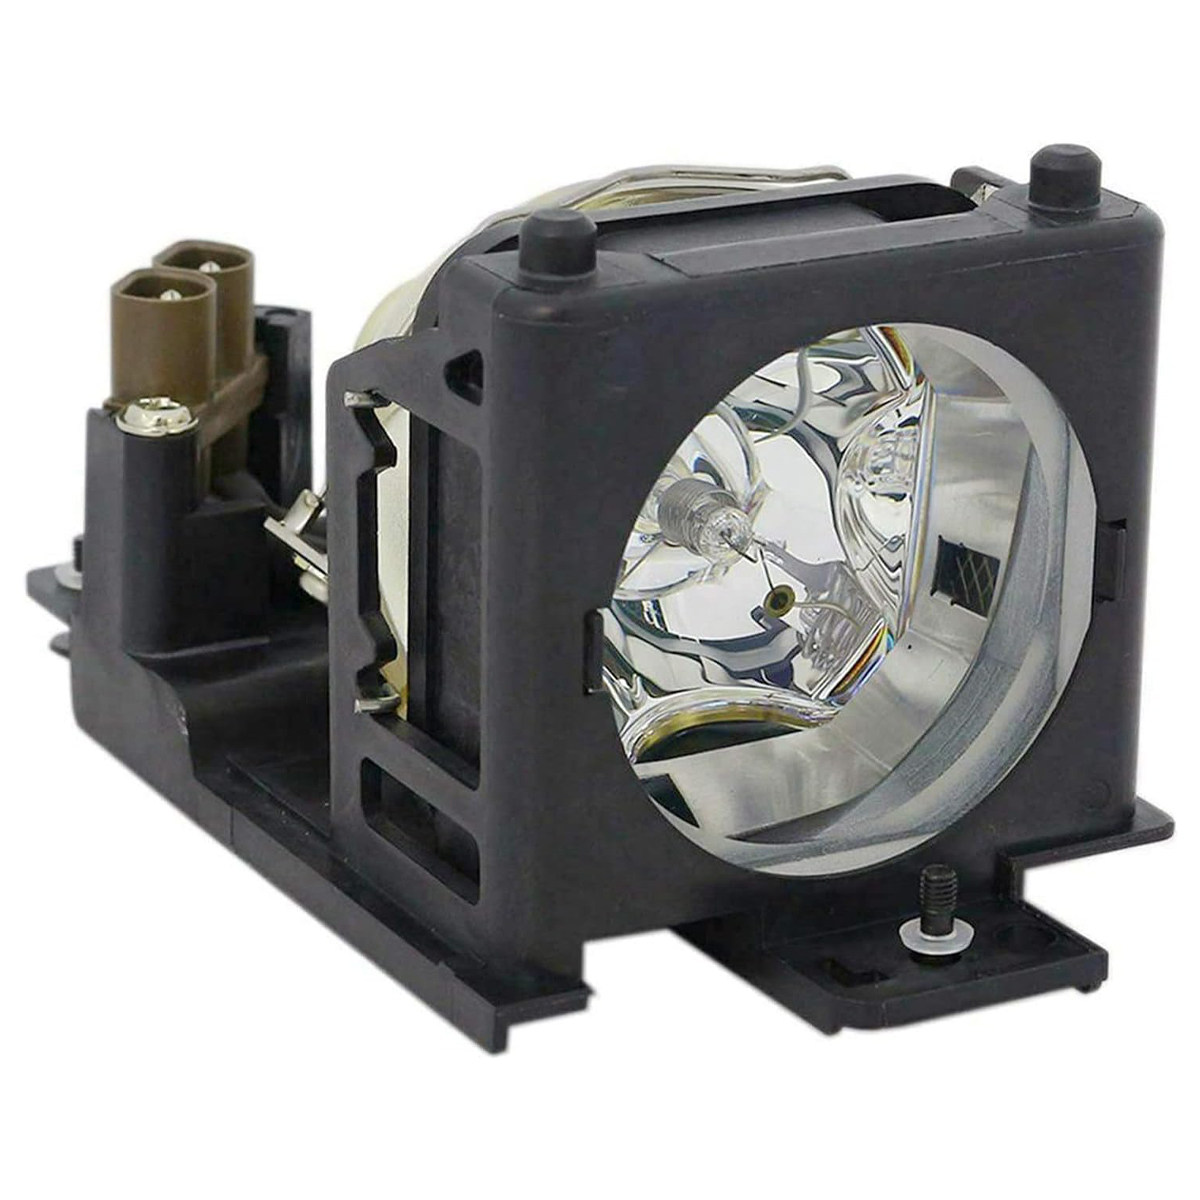 Replacement Projector lamp DT00707 For Hitachi ED-PJ32 PJ-L C9 PJ-L C9W